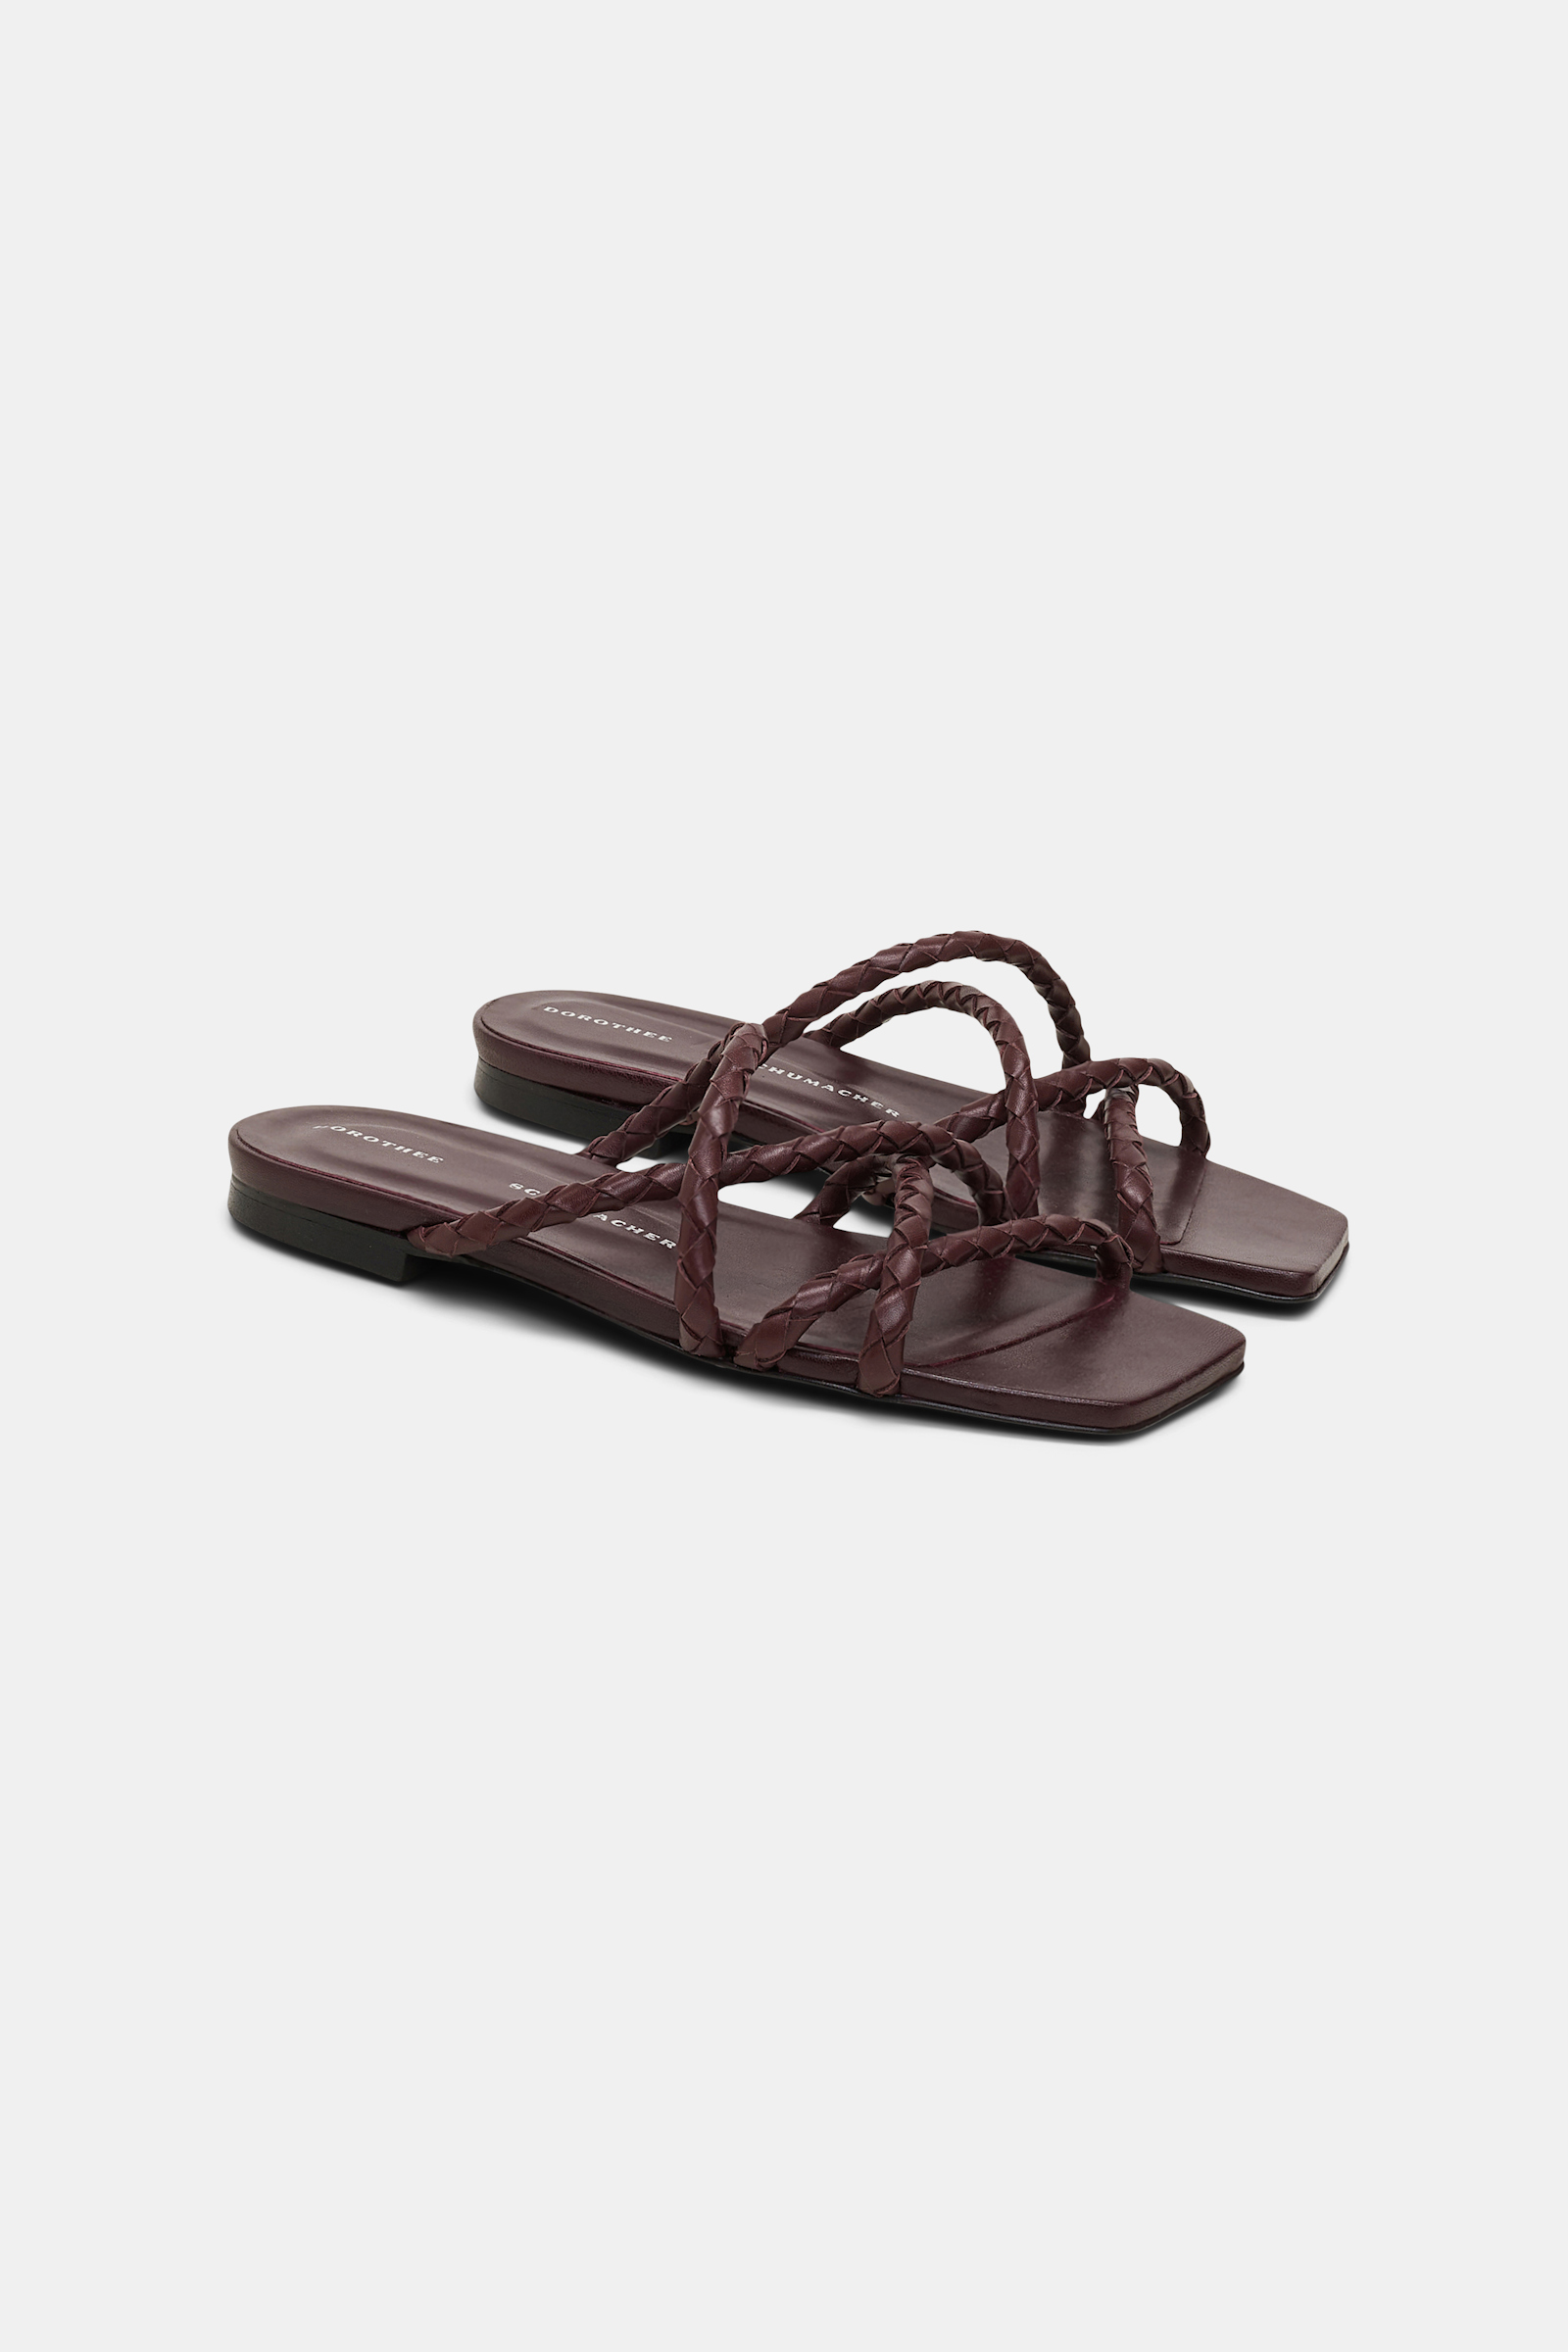 Dorothee Schumacher Woven calfskin flat sandals bordeaux